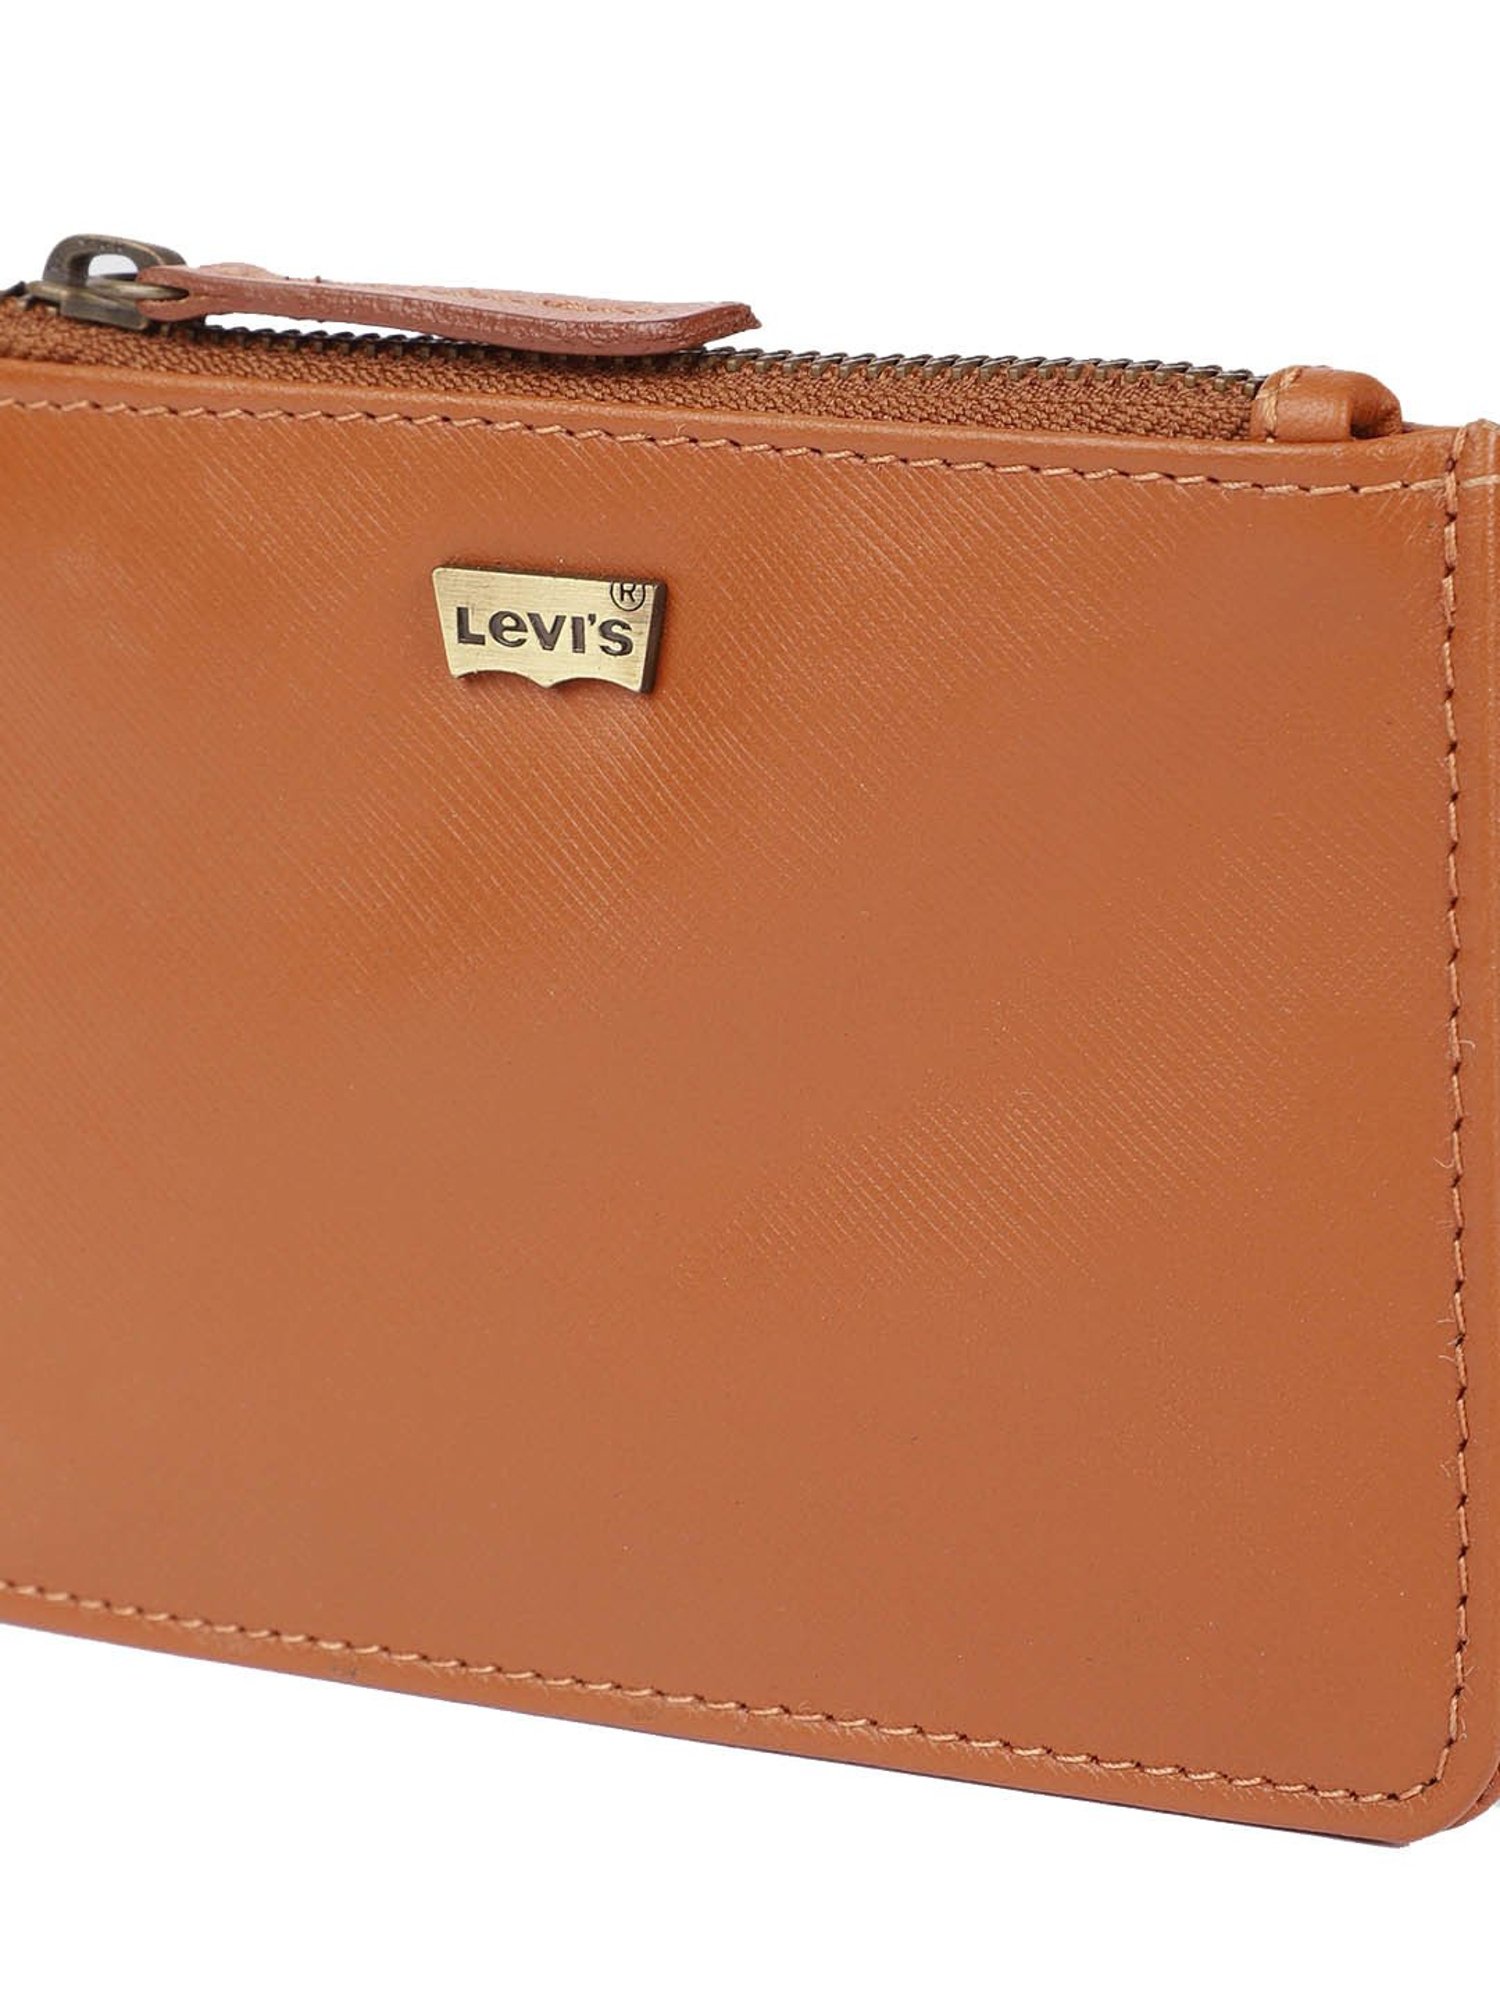 Buy Levi's Men Brown Wallet online